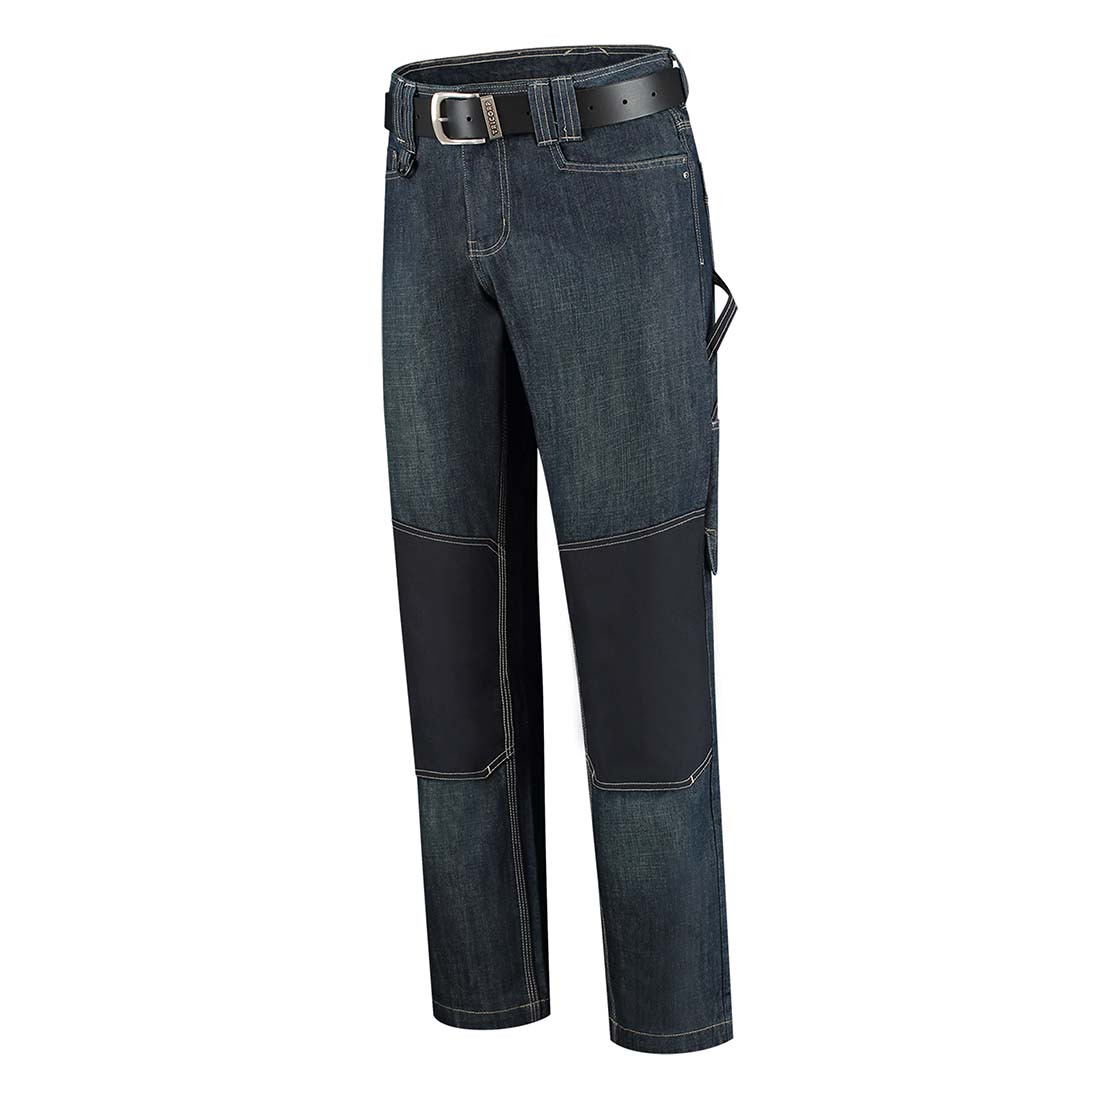 Unisex Work Jeans - Safetywear